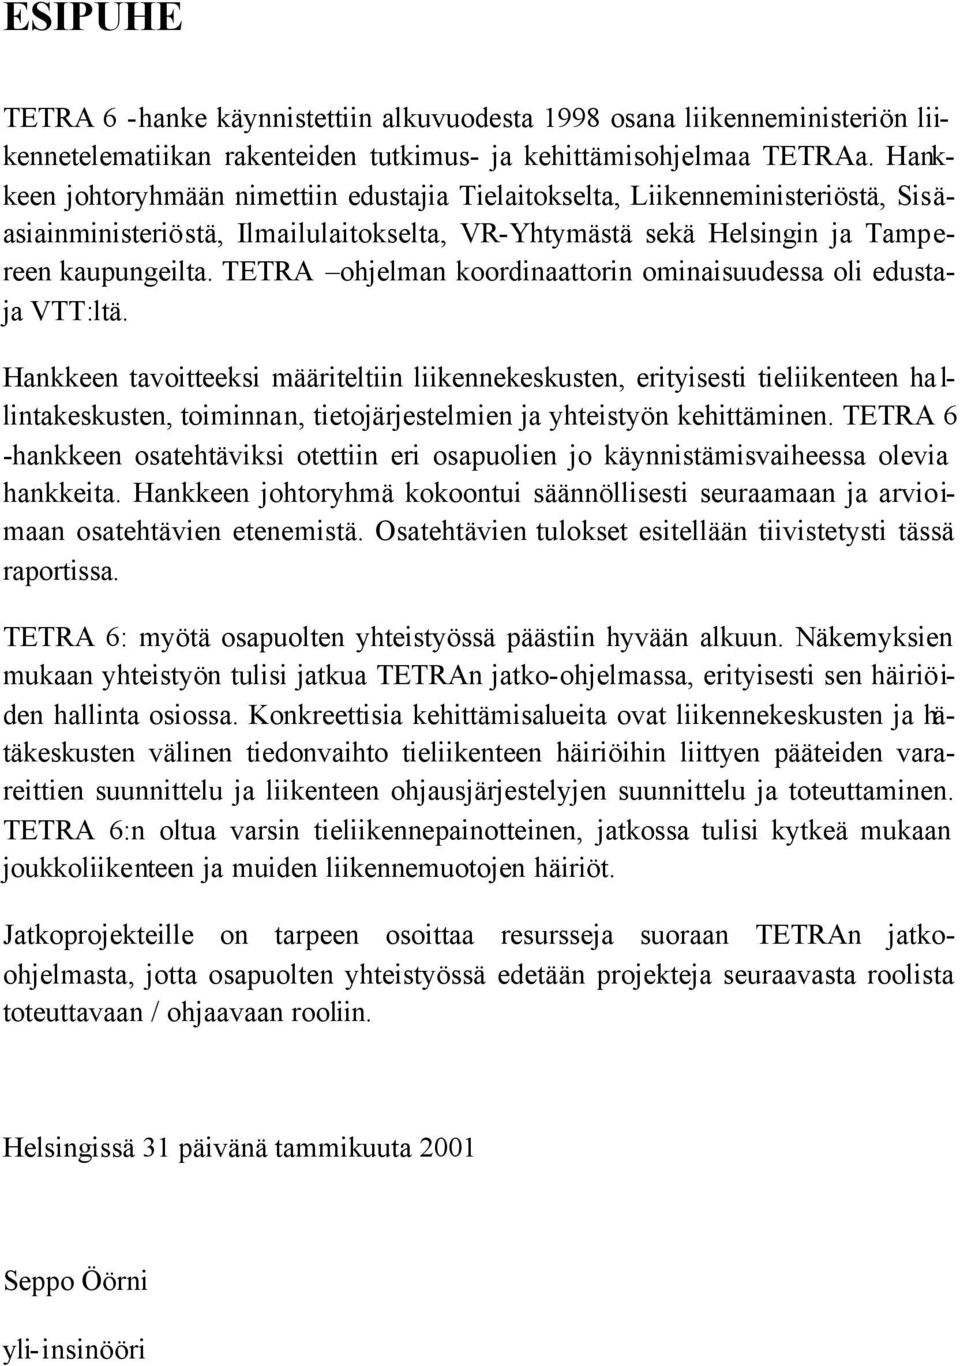 TETRA ohjelman koordinaattorin ominaisuudessa oli edustaja VTT:ltä.